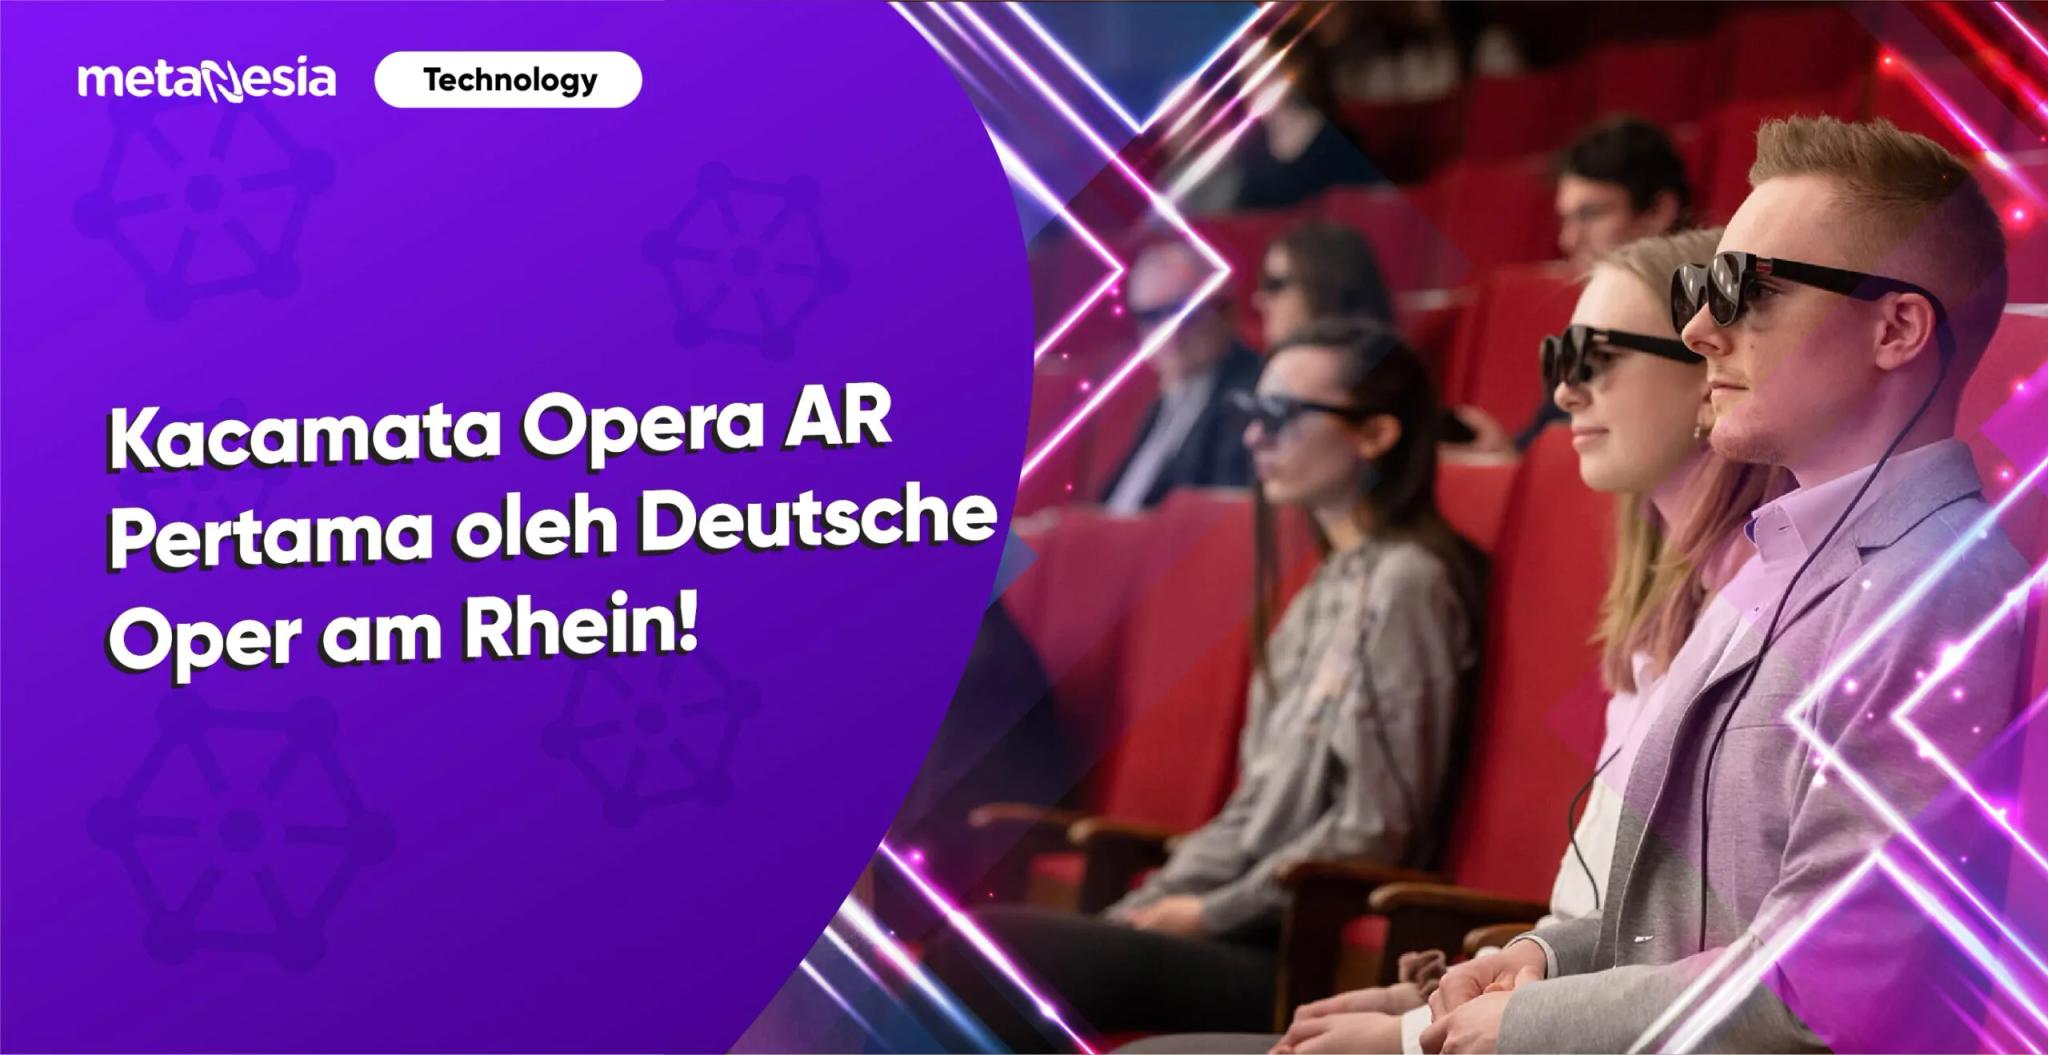 Penggunaan Kacamata Opera AR Pertama oleh Deutsche Oper am Rhein!